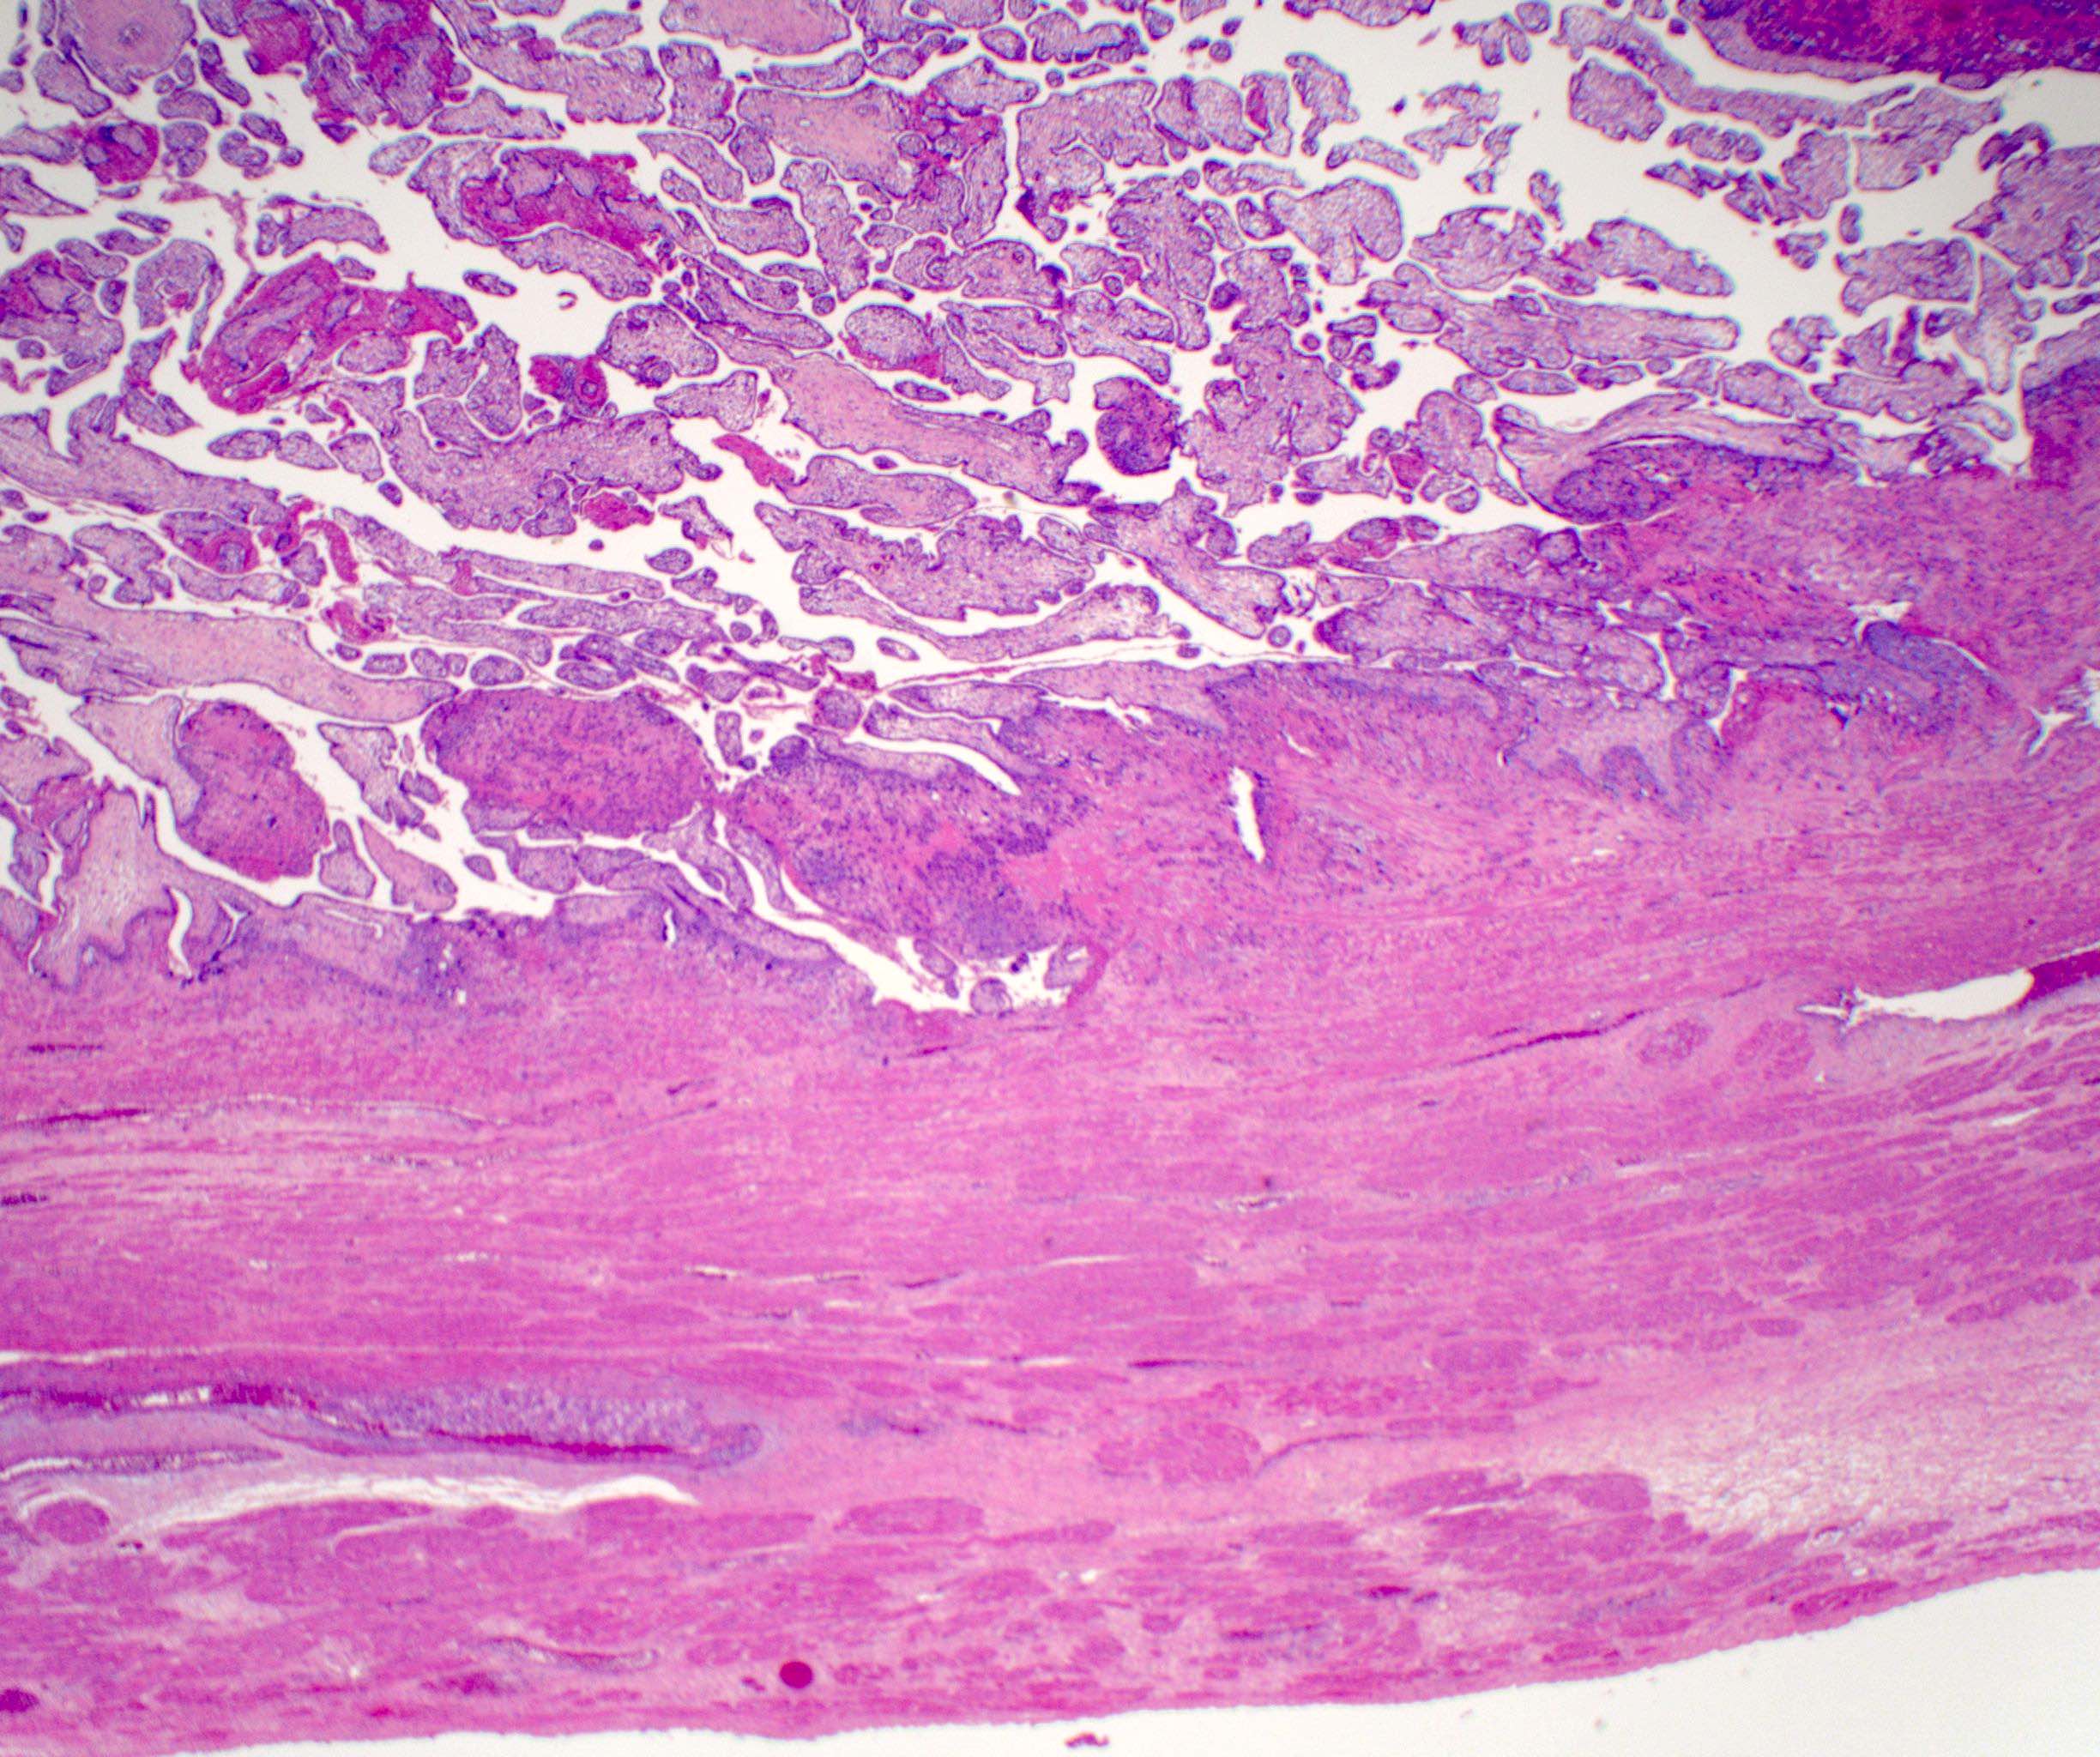 pathology of the placenta